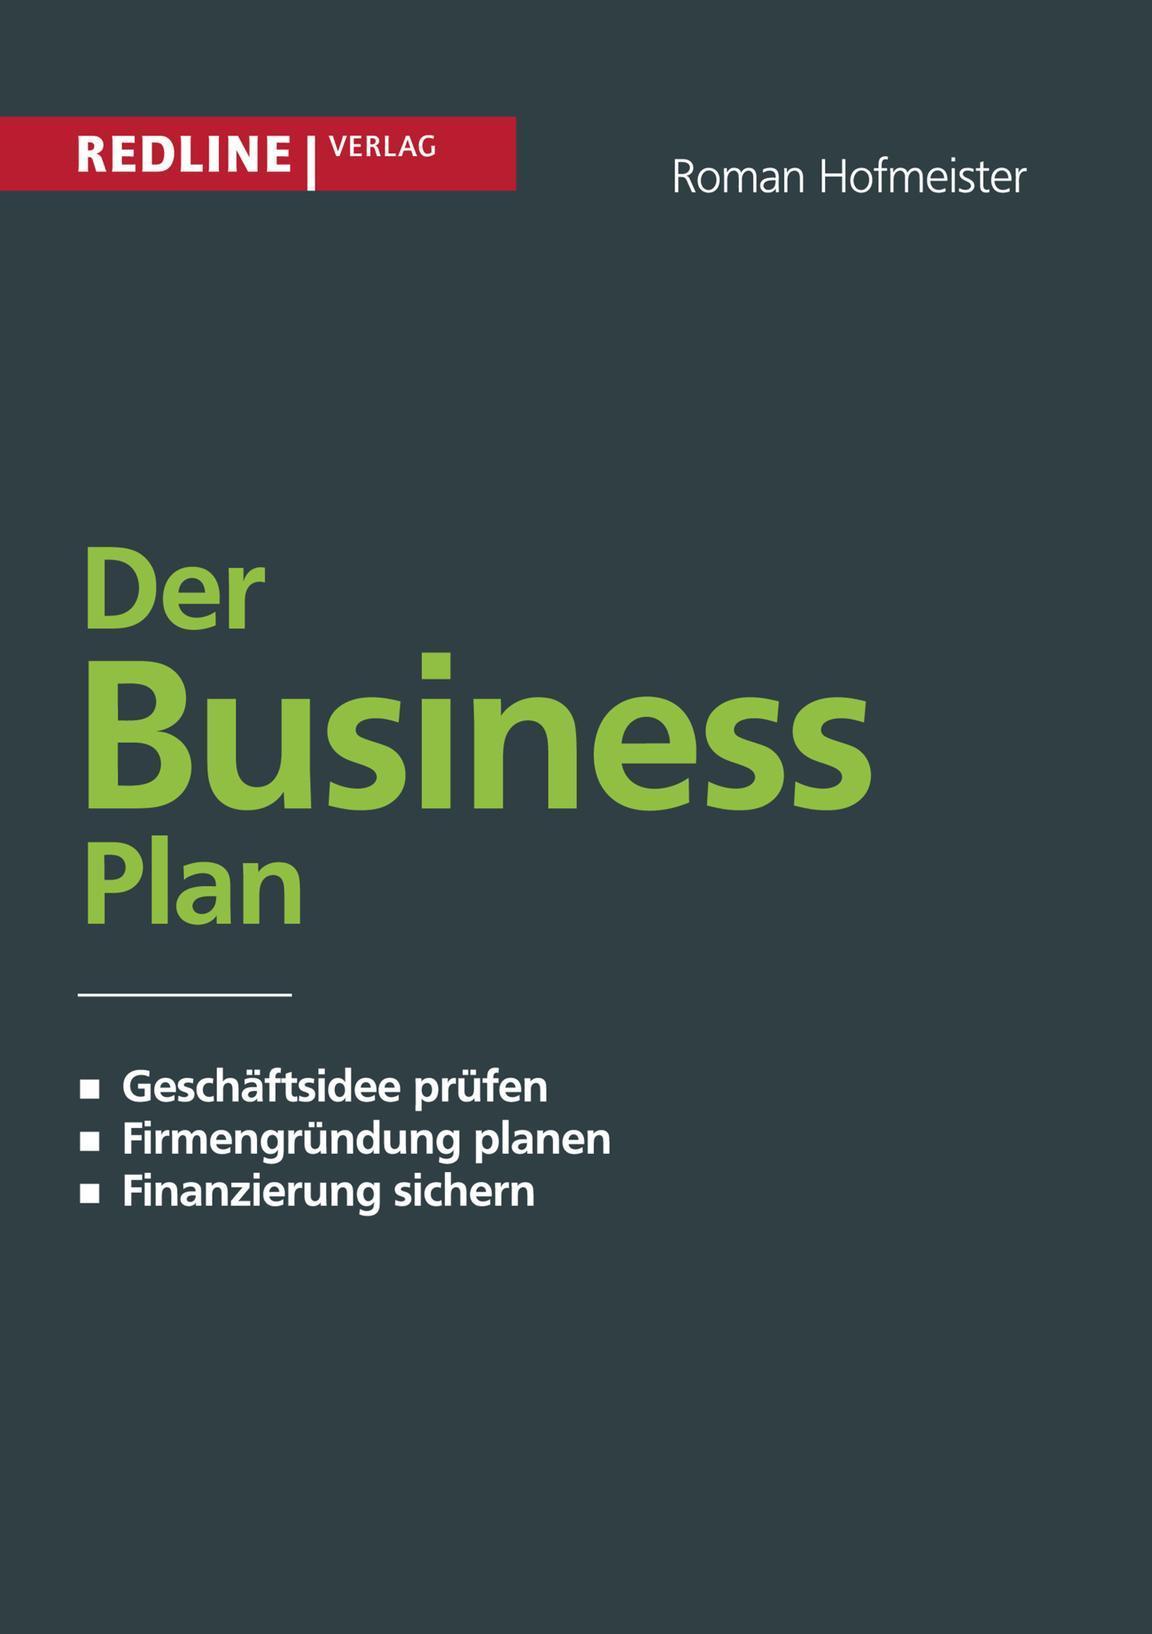 Der Business Plan Geschäftsidee prüfen. Firmengründung planen. Finanzierung sichern